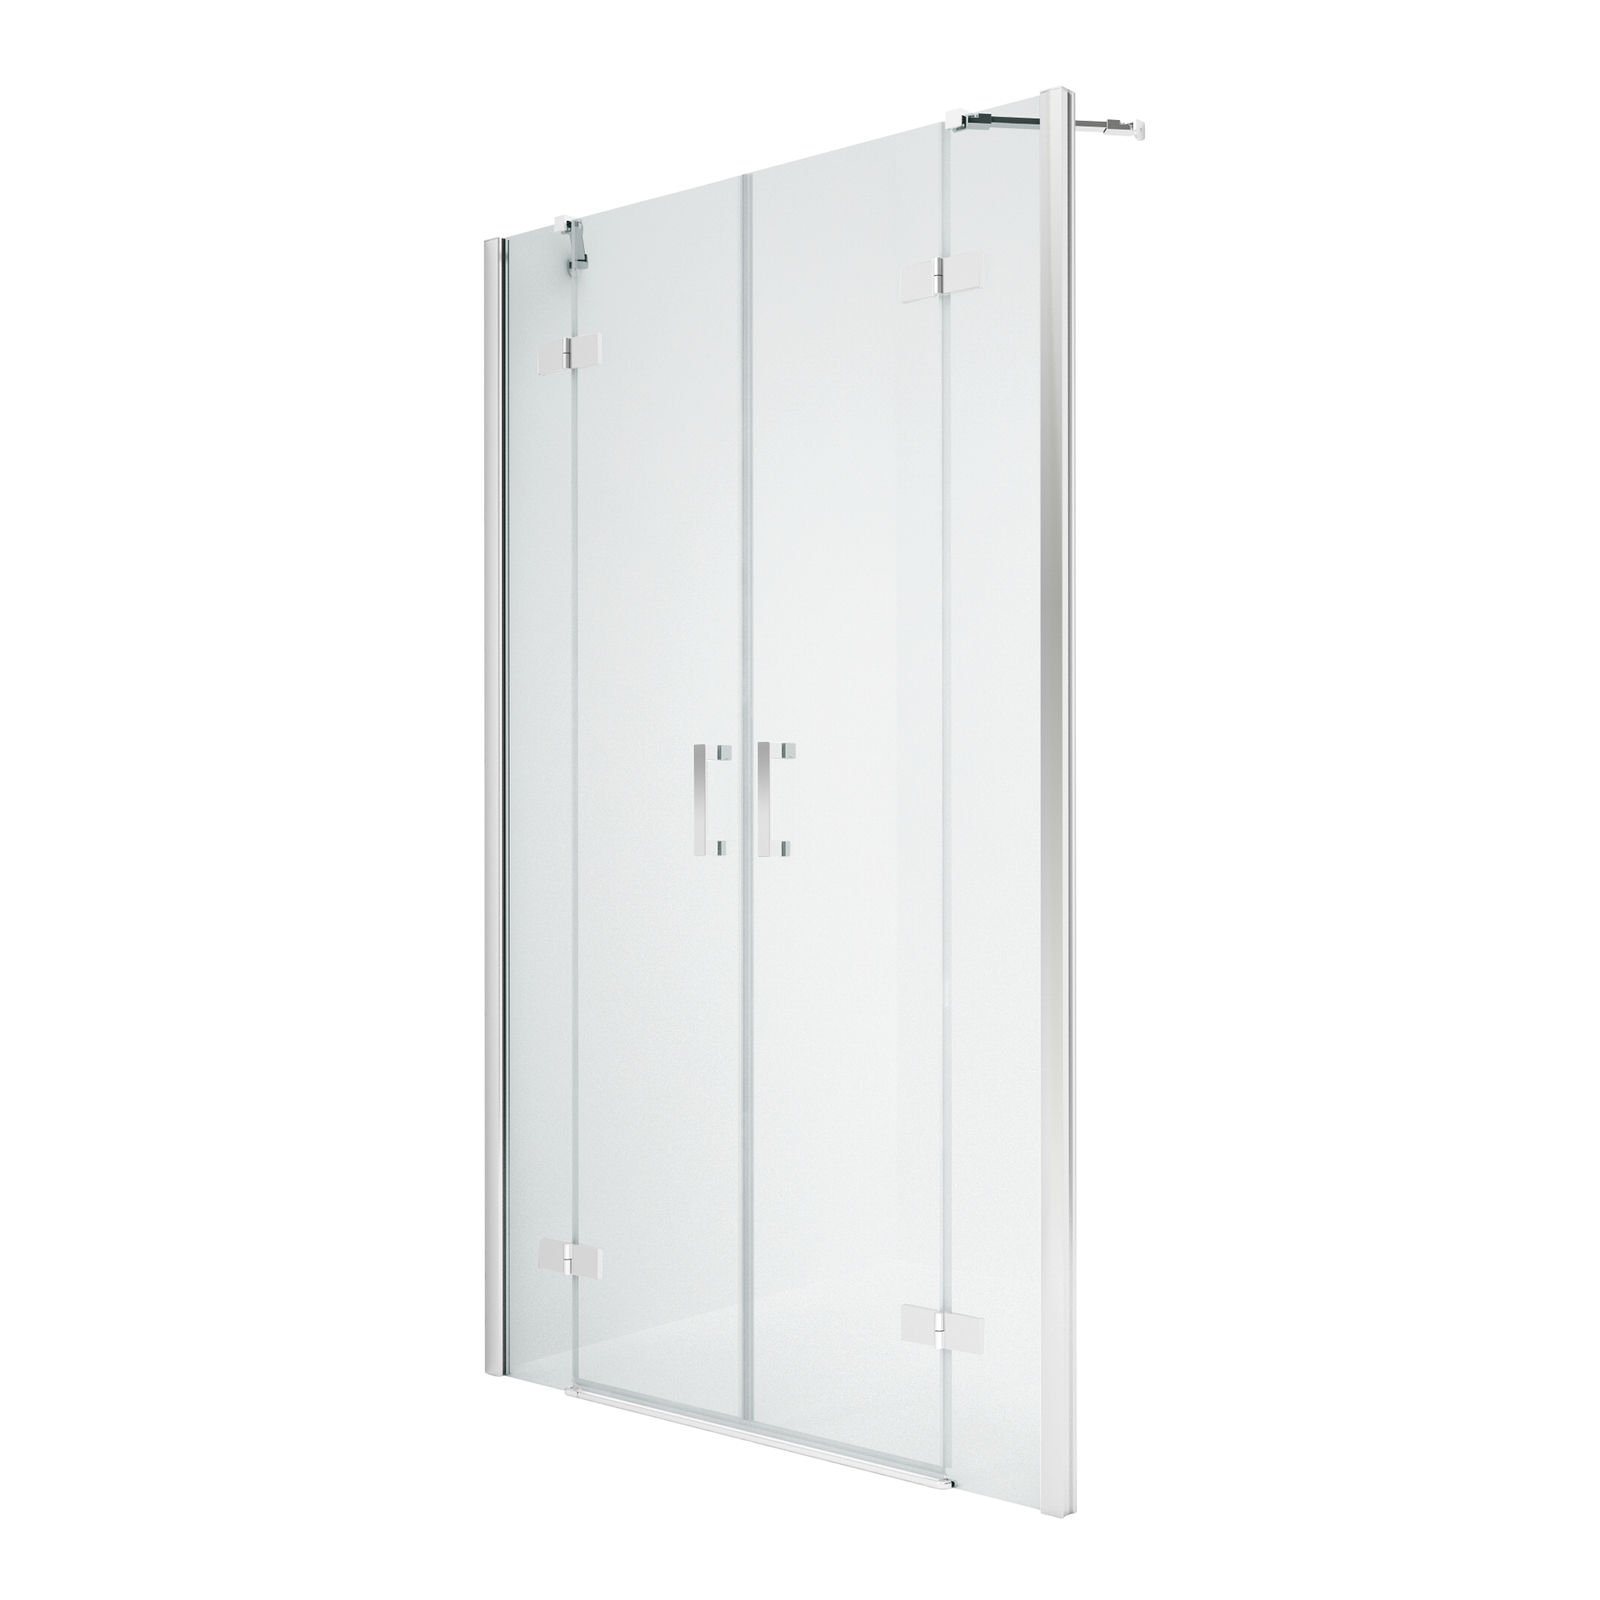 Zdjęcia - Ścianka prysznicowa New Trendy Drzwi prysznicowe  Ingrid 170x195x195 CER-0081 